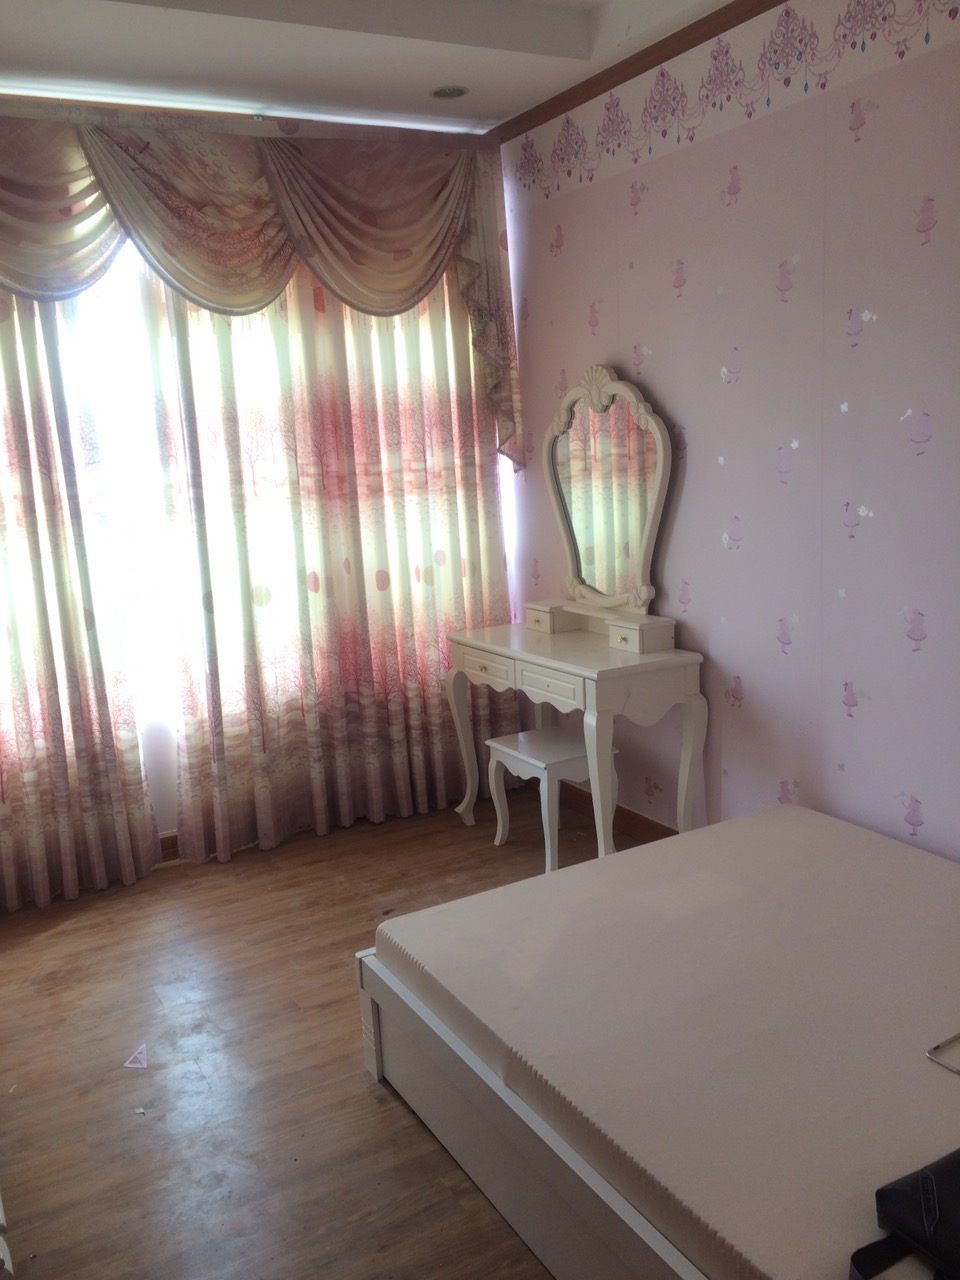 Cho thuê chung cư Phú Hoàng Anh 3 phòng ngủ, giá 10tr/th, nội thất cơ bản, vào ở liền lh 0903388269